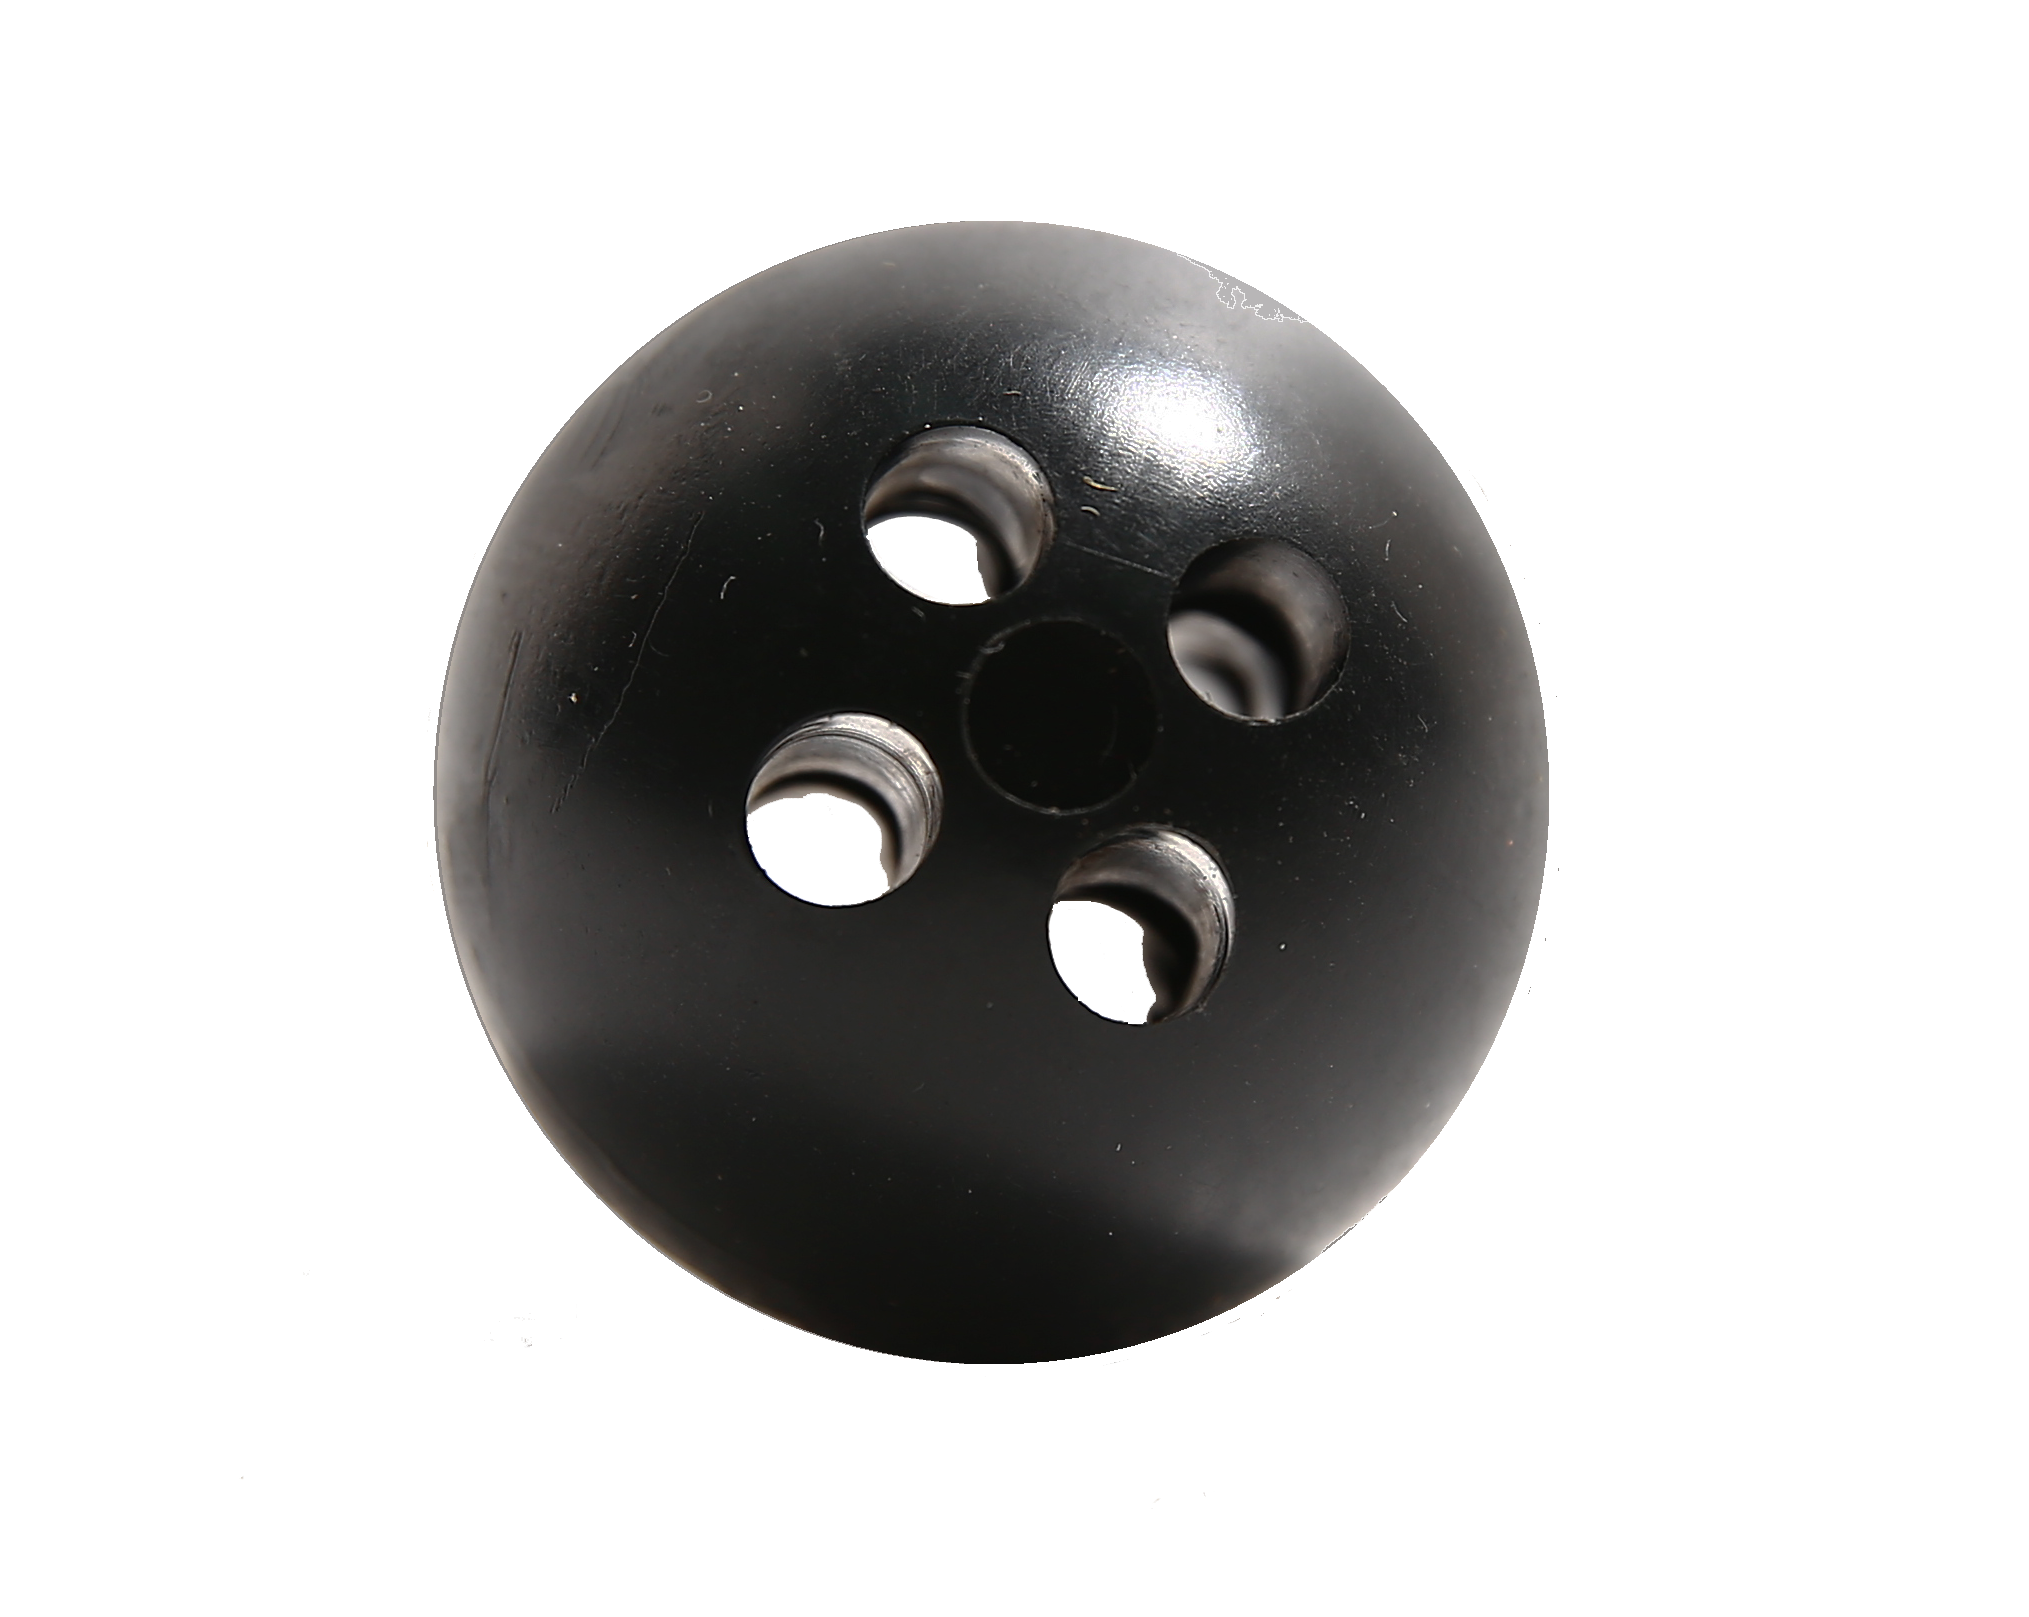 تعادل الكرة المستخدمة للتعبئة داخل صافي وتعادل مع سلك أو حبل خارج